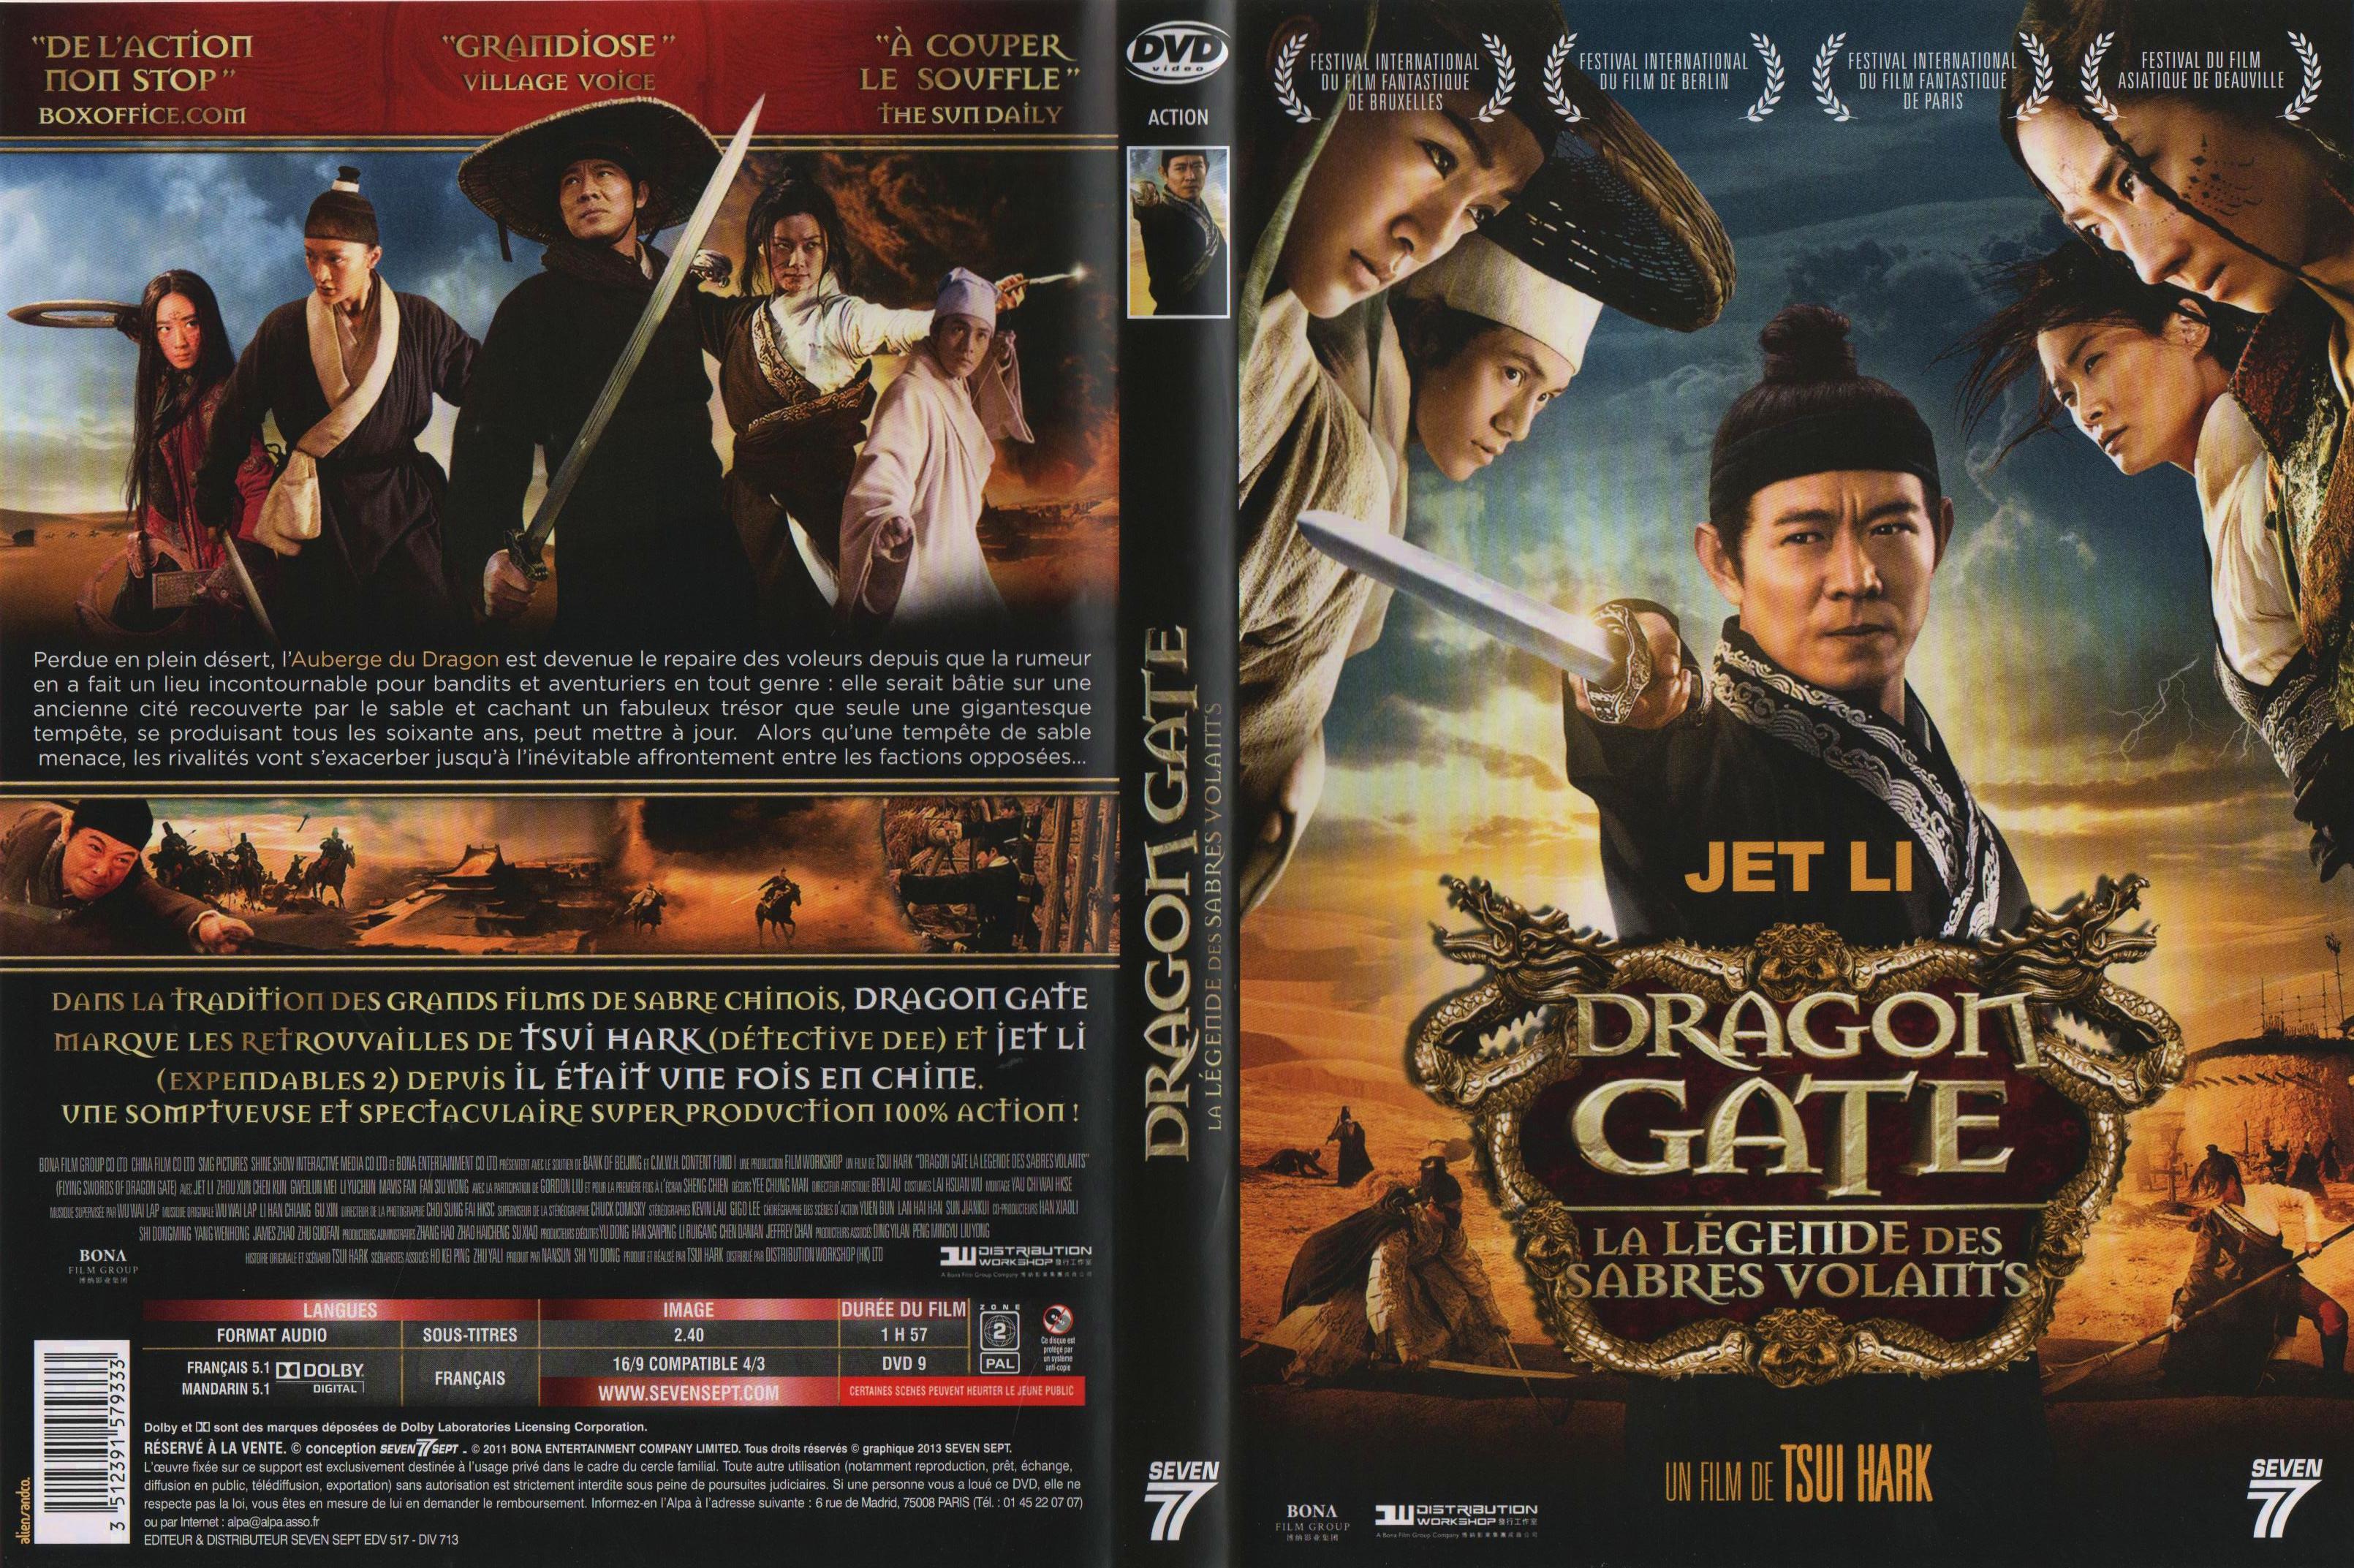 Jaquette DVD Dragon Gate, la lgende des sabres volants